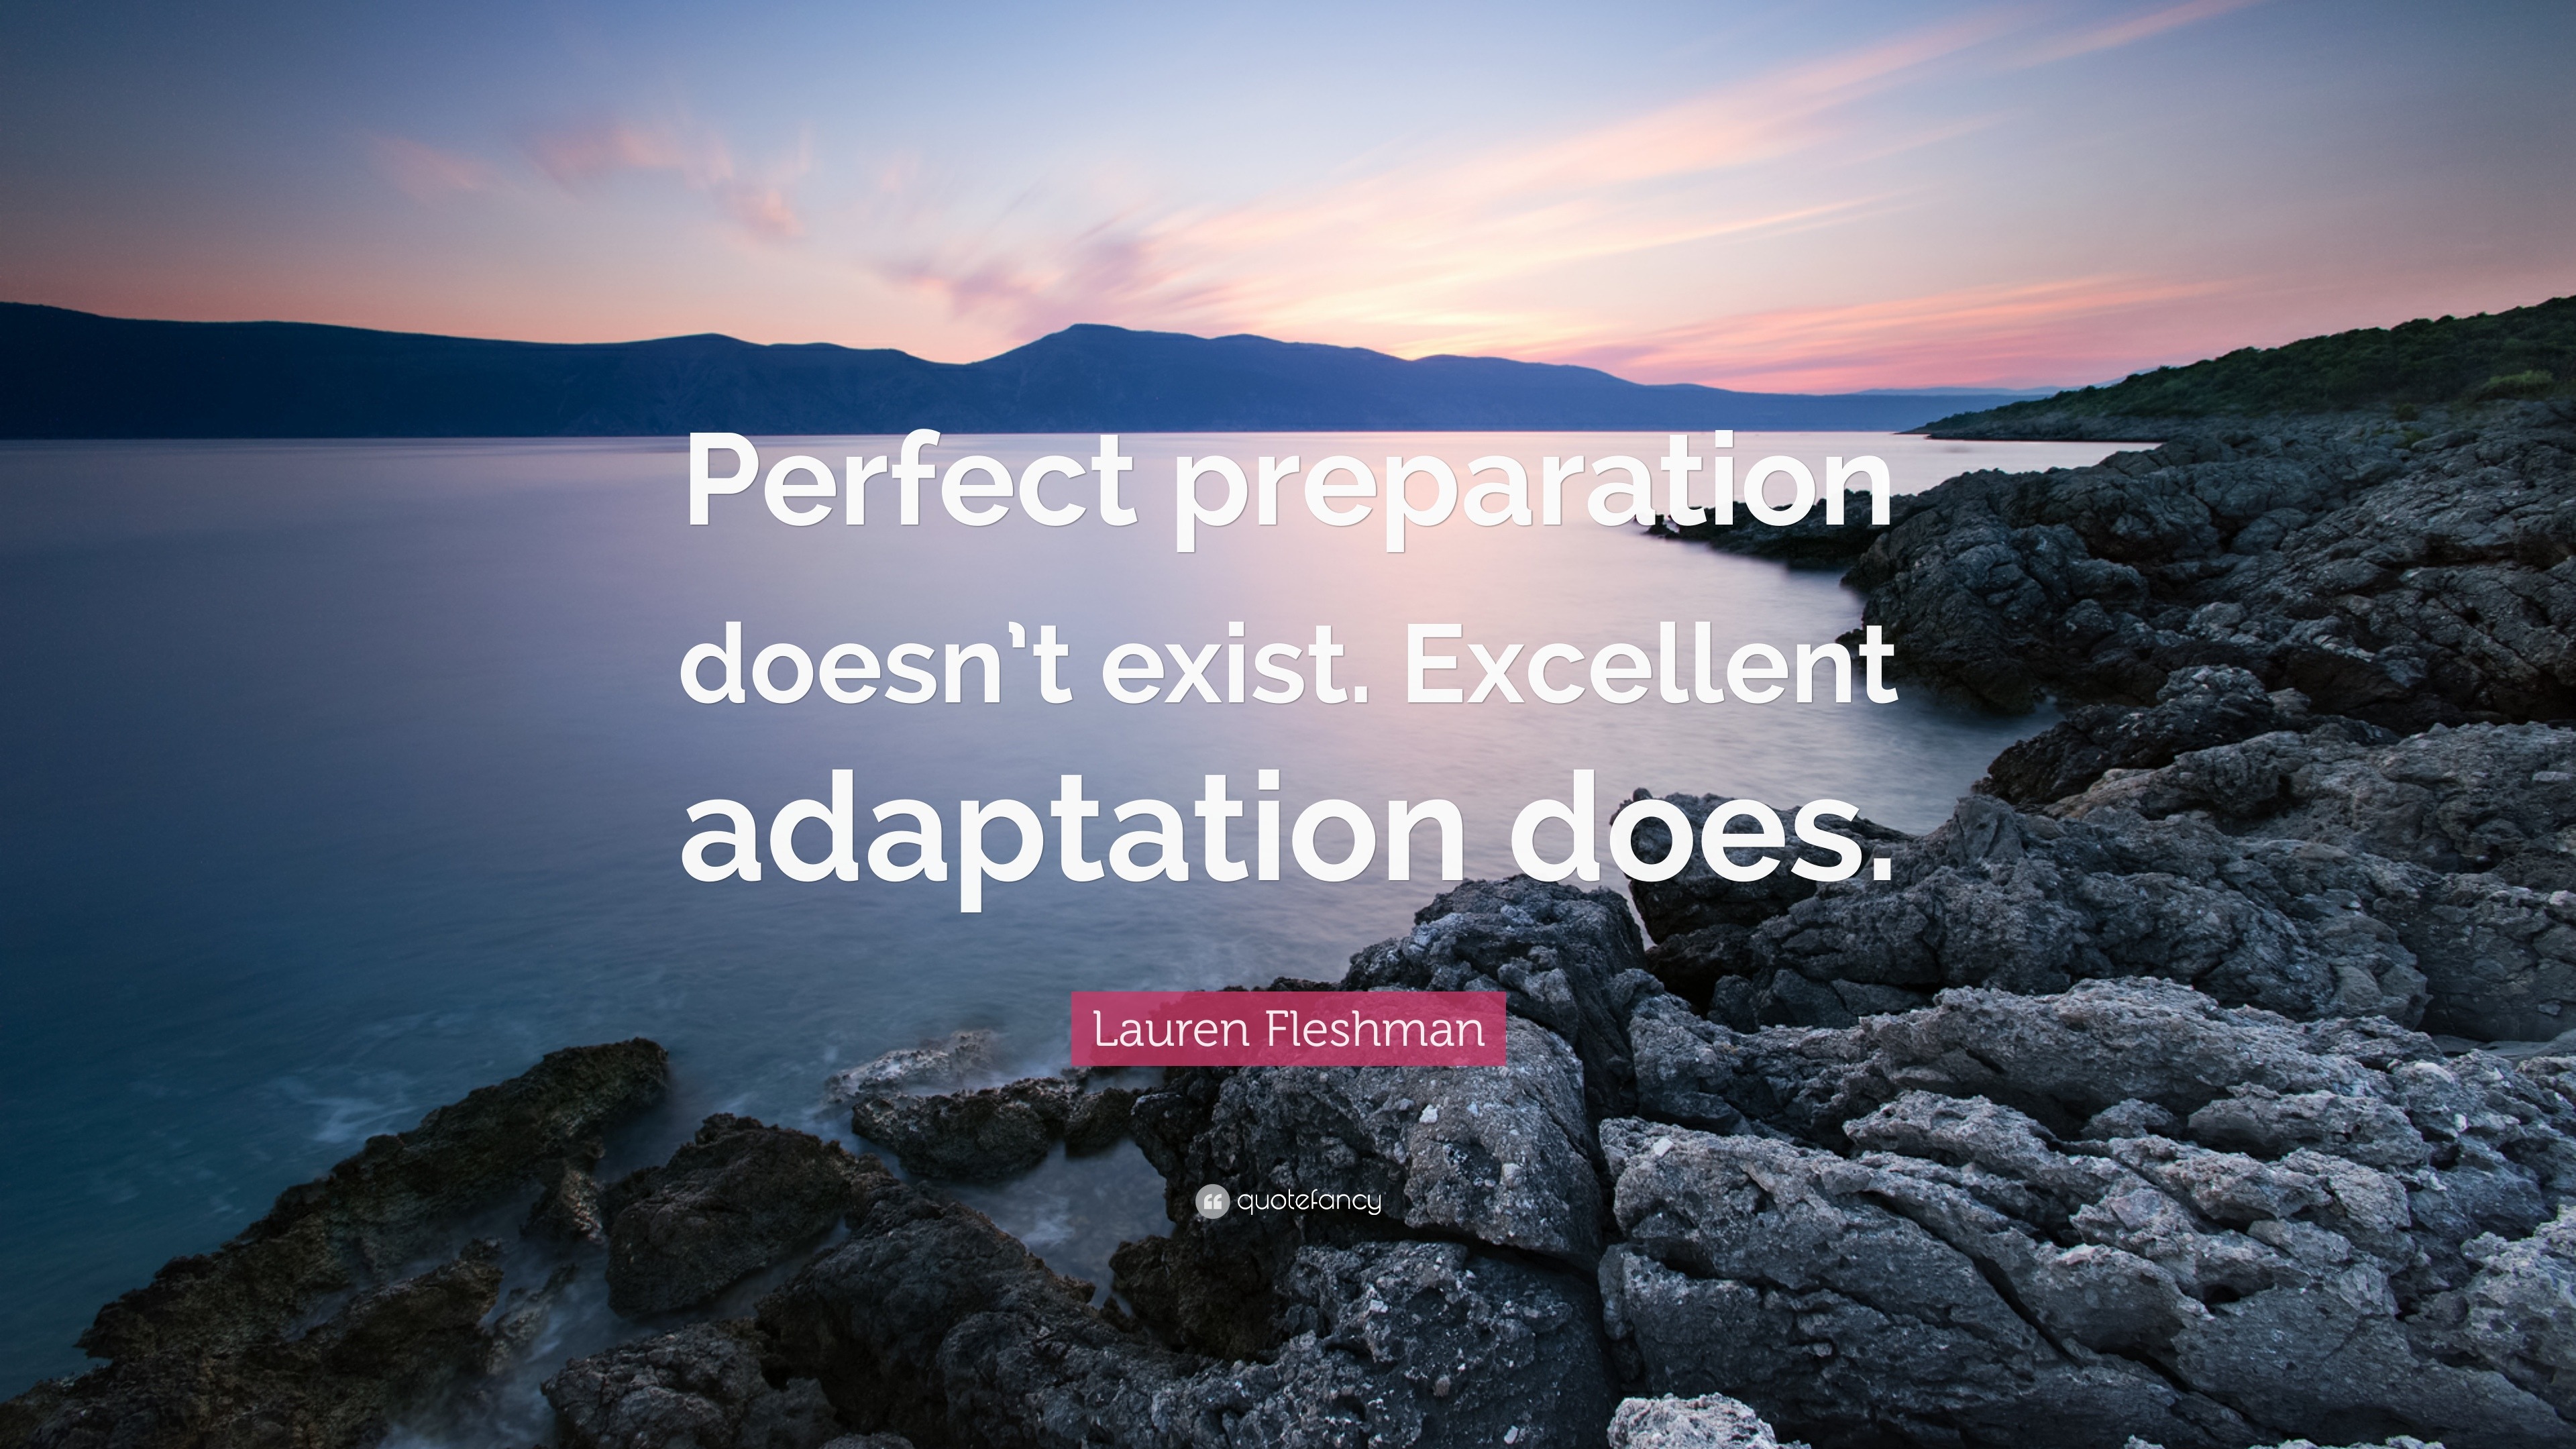 Lauren Fleshman Quote: “Perfect preparation doesn't exist